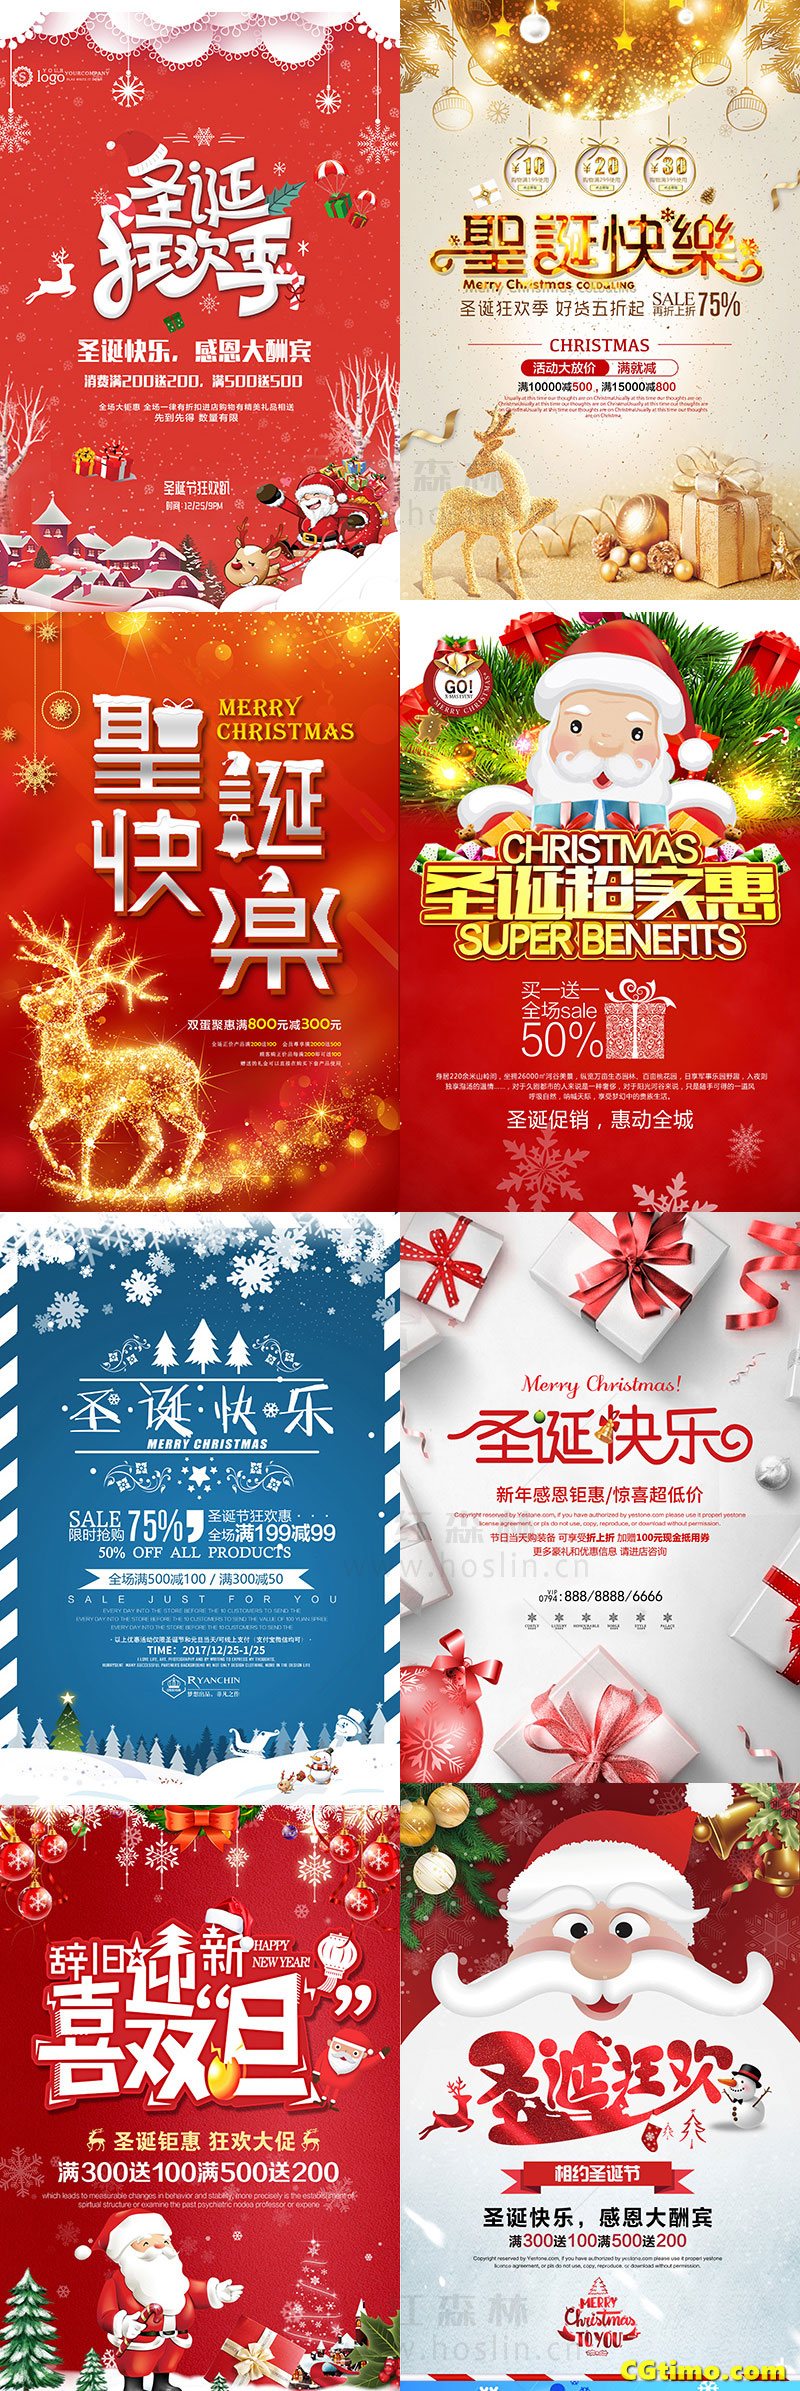 PSD素材-圣诞节日促销海报psd模板 PSD素材 第9张